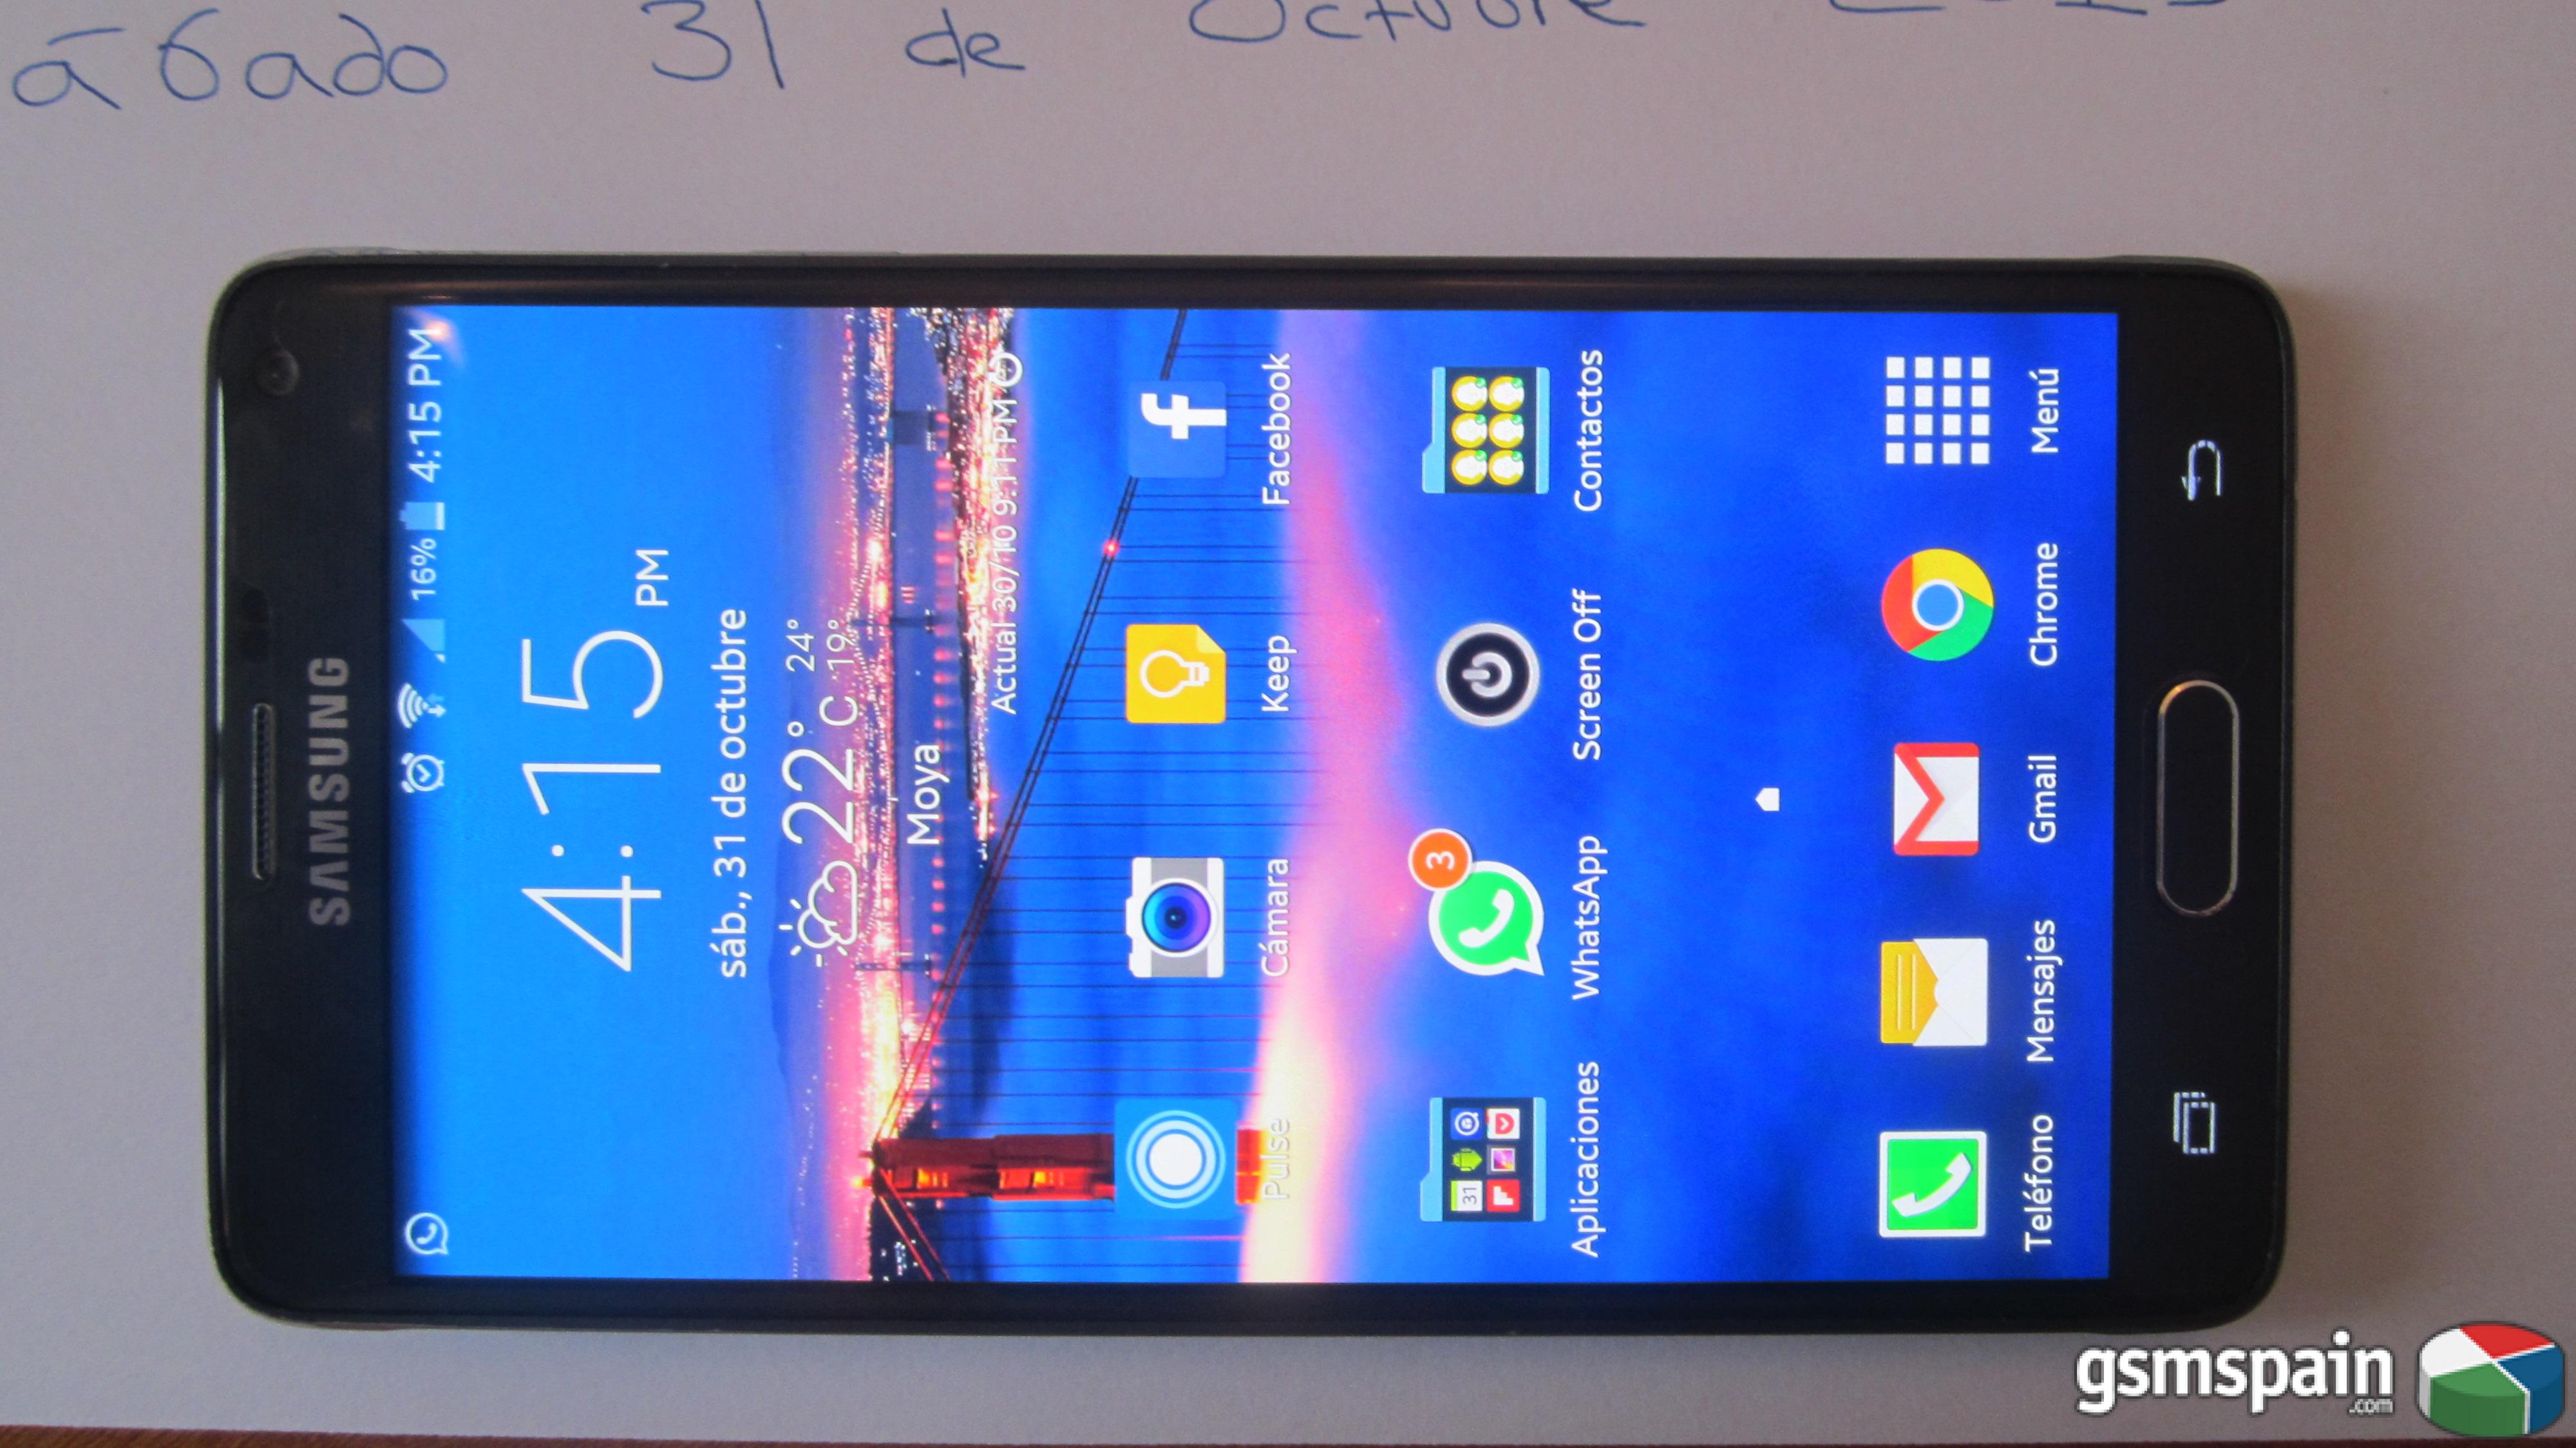 [VENDO] Samsung Galaxy Note 4 negro, libre de fbrica + extras por 320